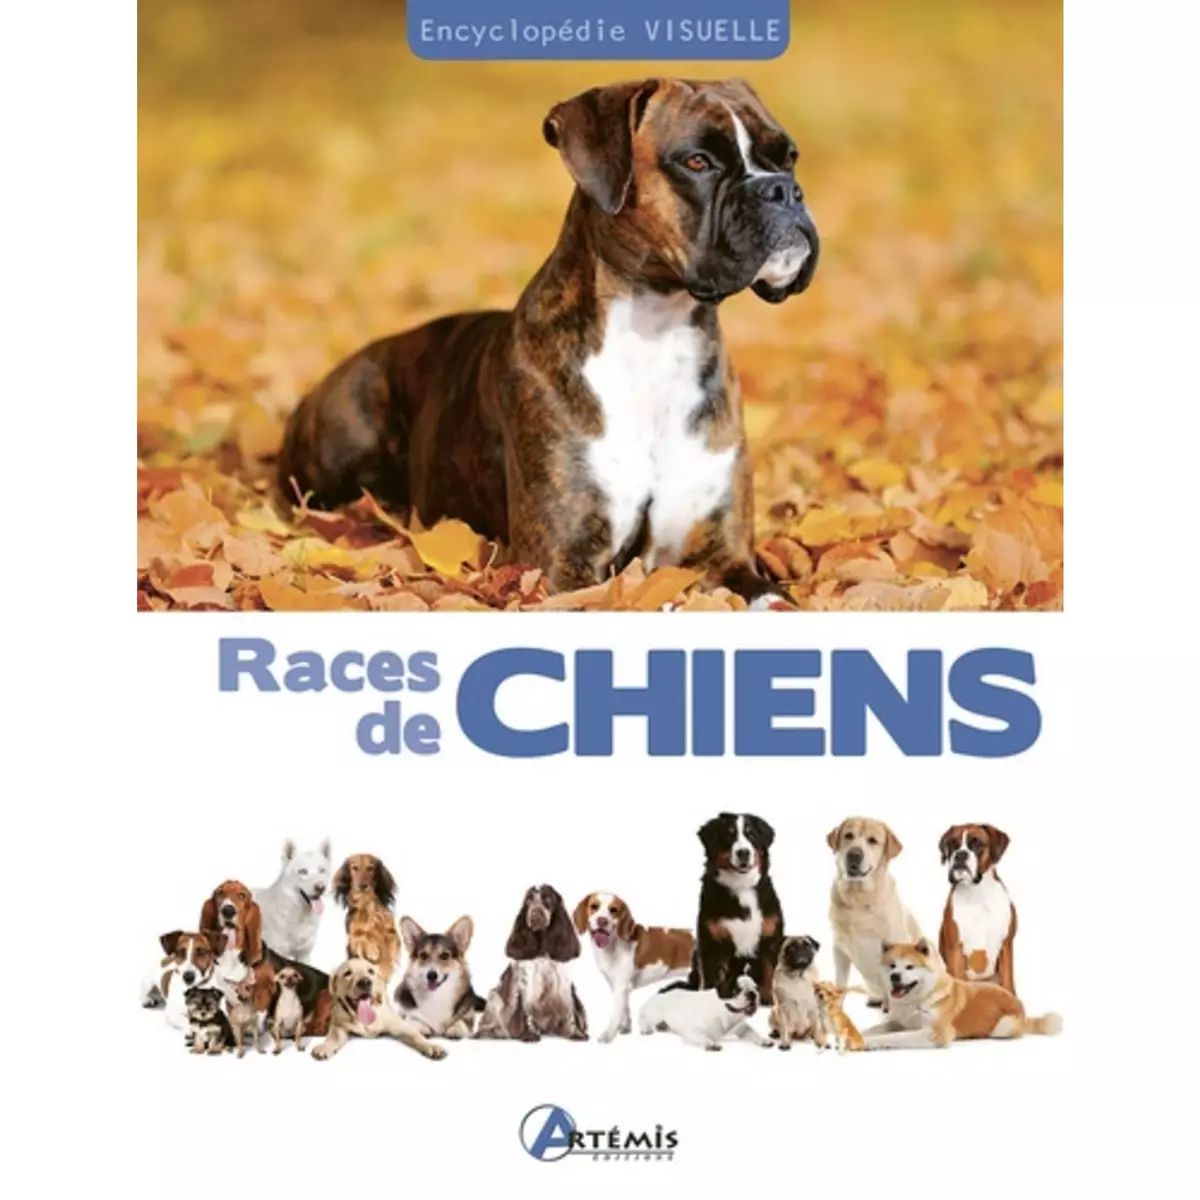  RACES DE CHIENS, Fournier Alain